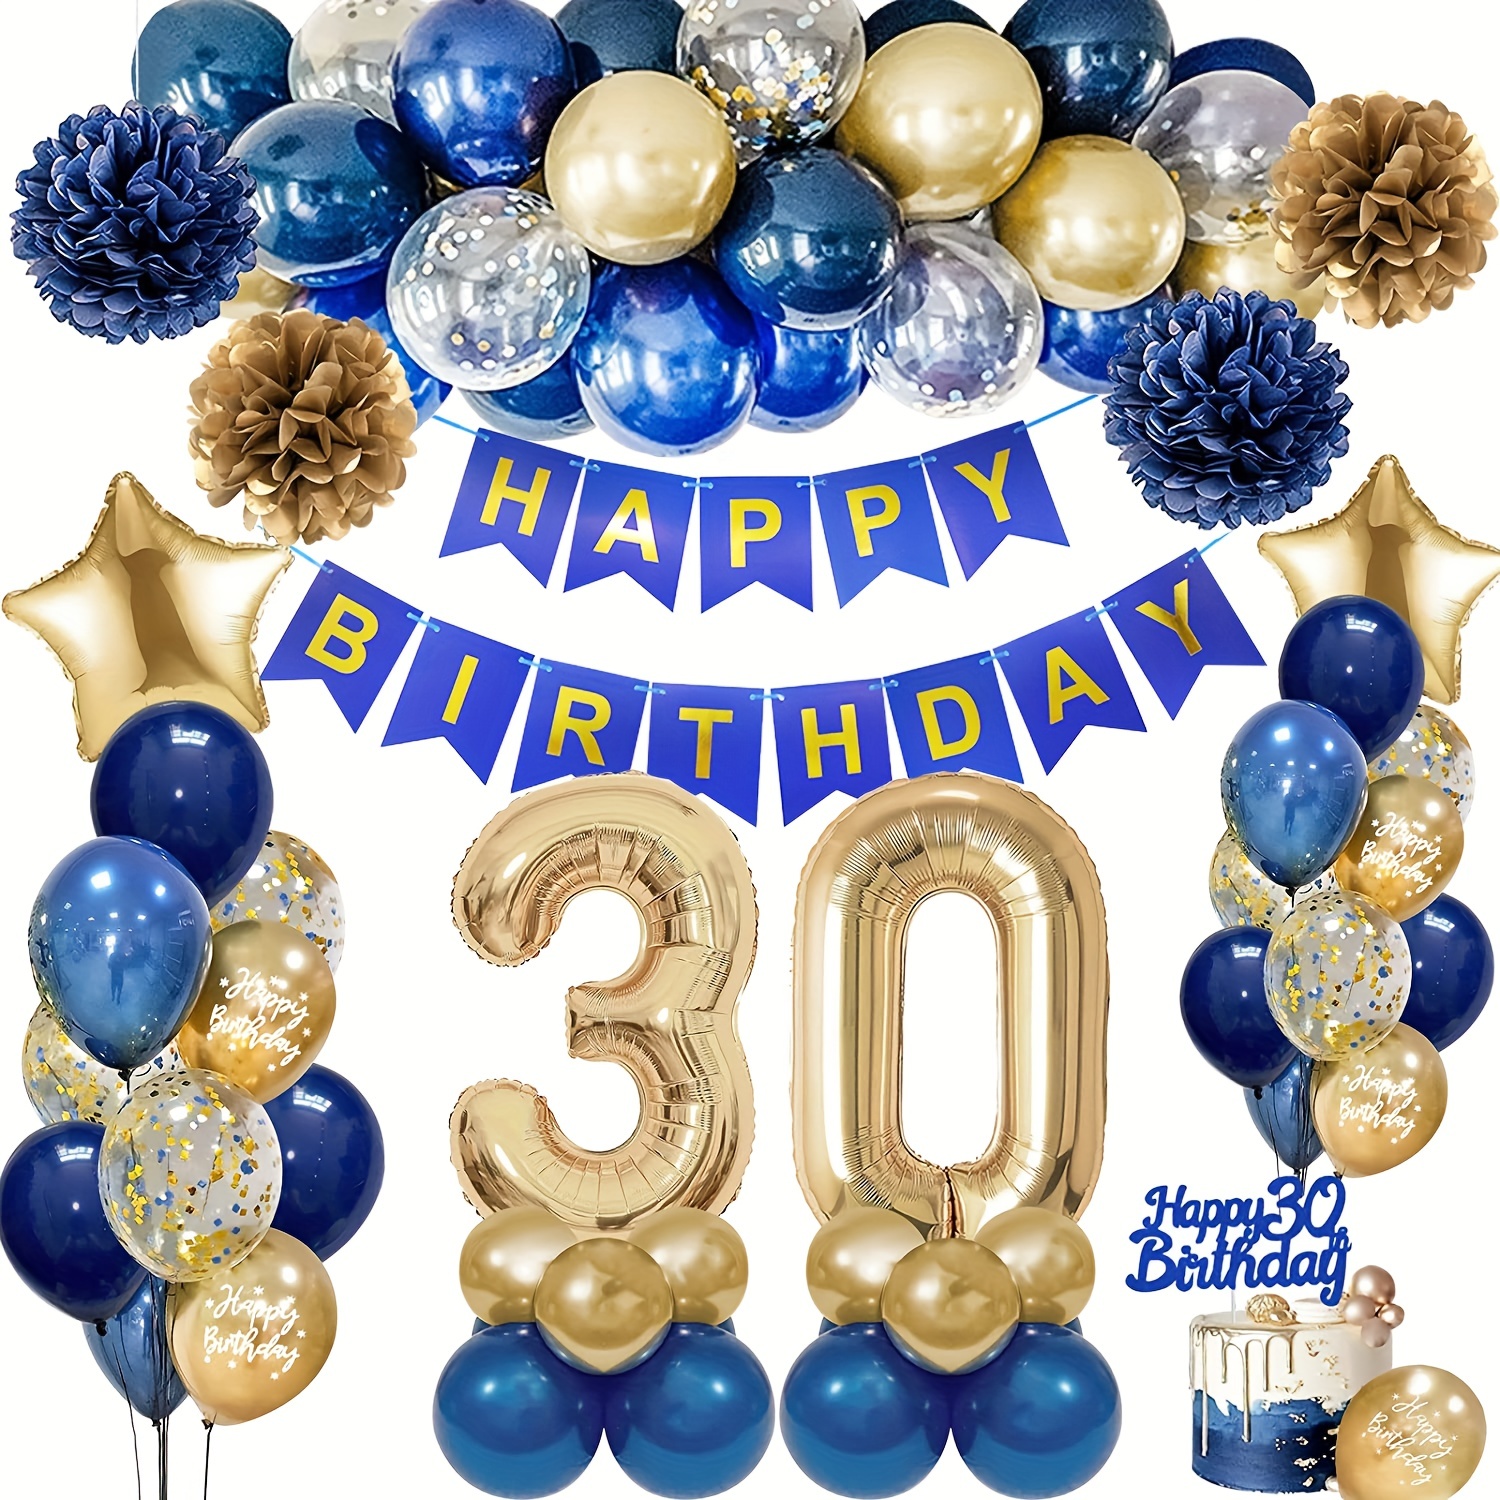  Decoraciones de cumpleaños número 50 para hombres y mujeres,  negro y dorado, pancarta de cumpleaños negro y dorado y 18 globos de feliz  cumpleaños para 50 aniversario, suministros de fiesta de 